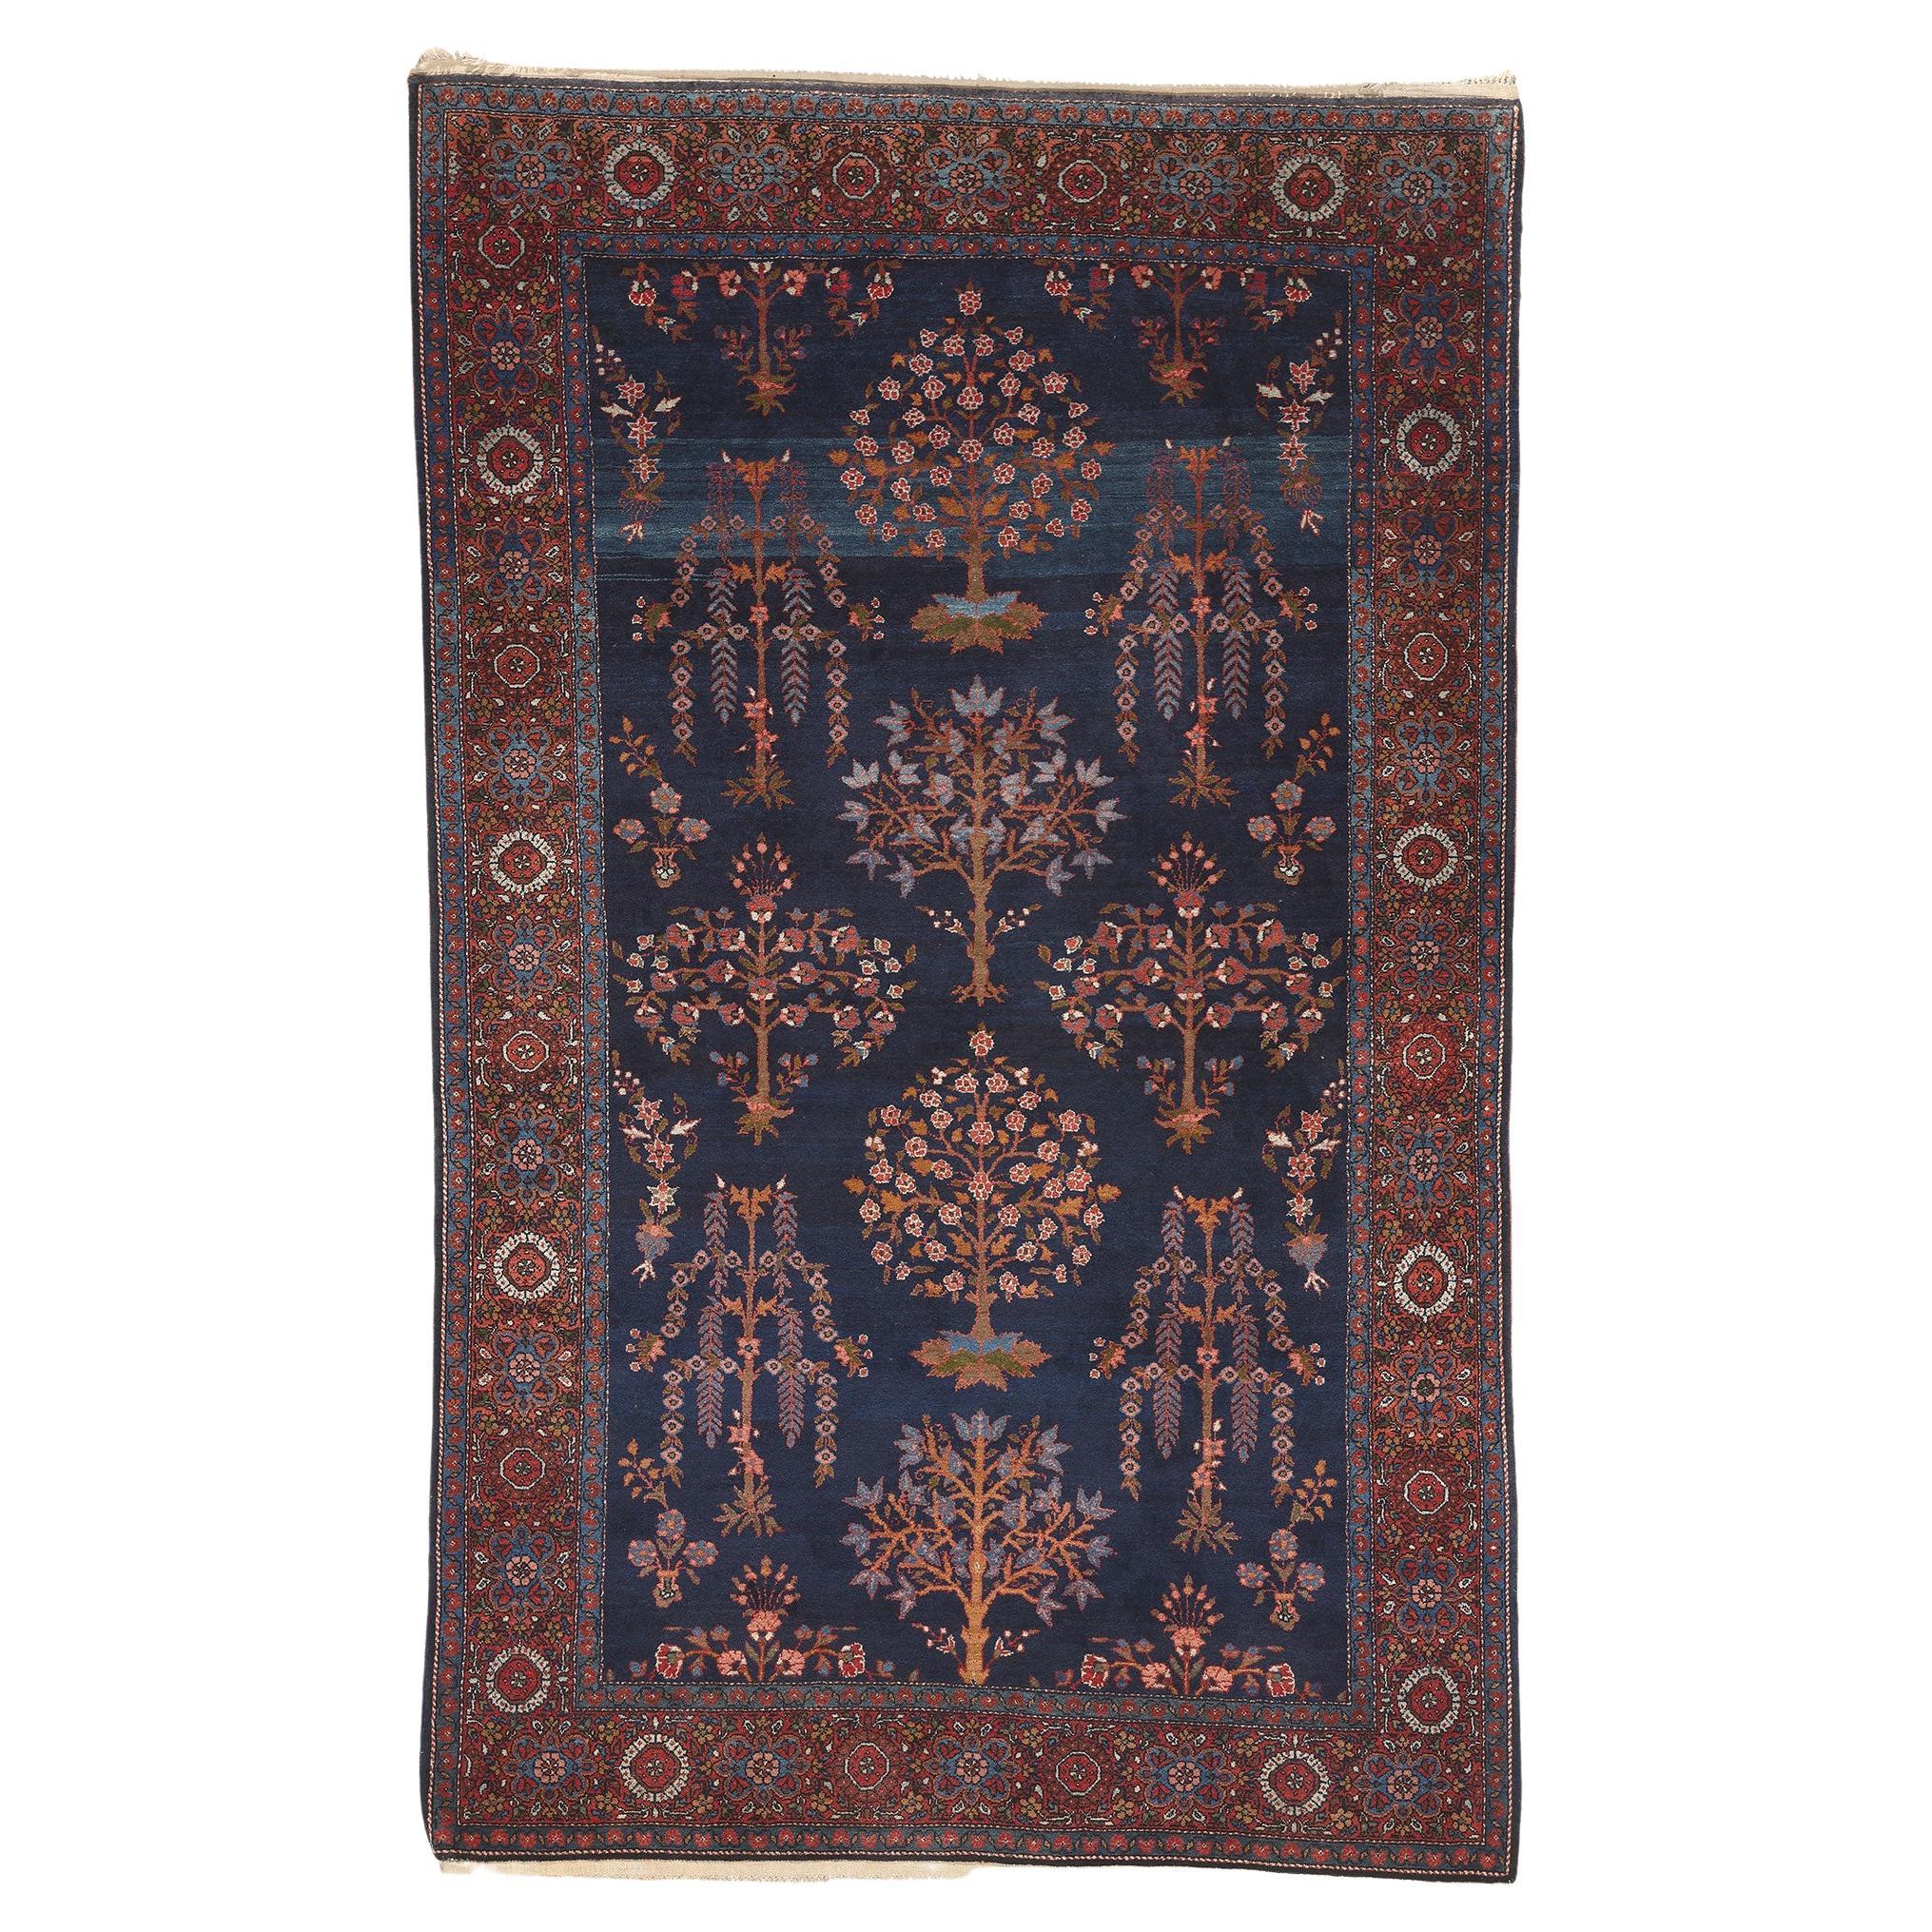 Antique tapis persan Sarouk Farahan, Beauté séduisante et attrait Timeless